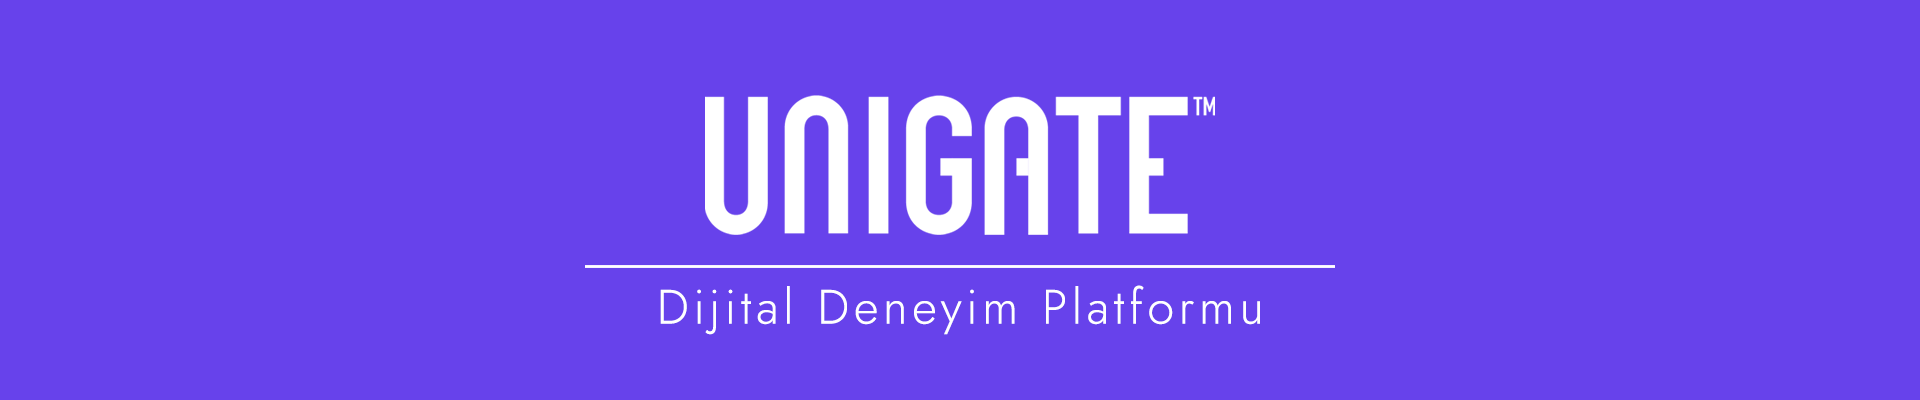 Unigate DXP - Dijital Deneyim Platformu